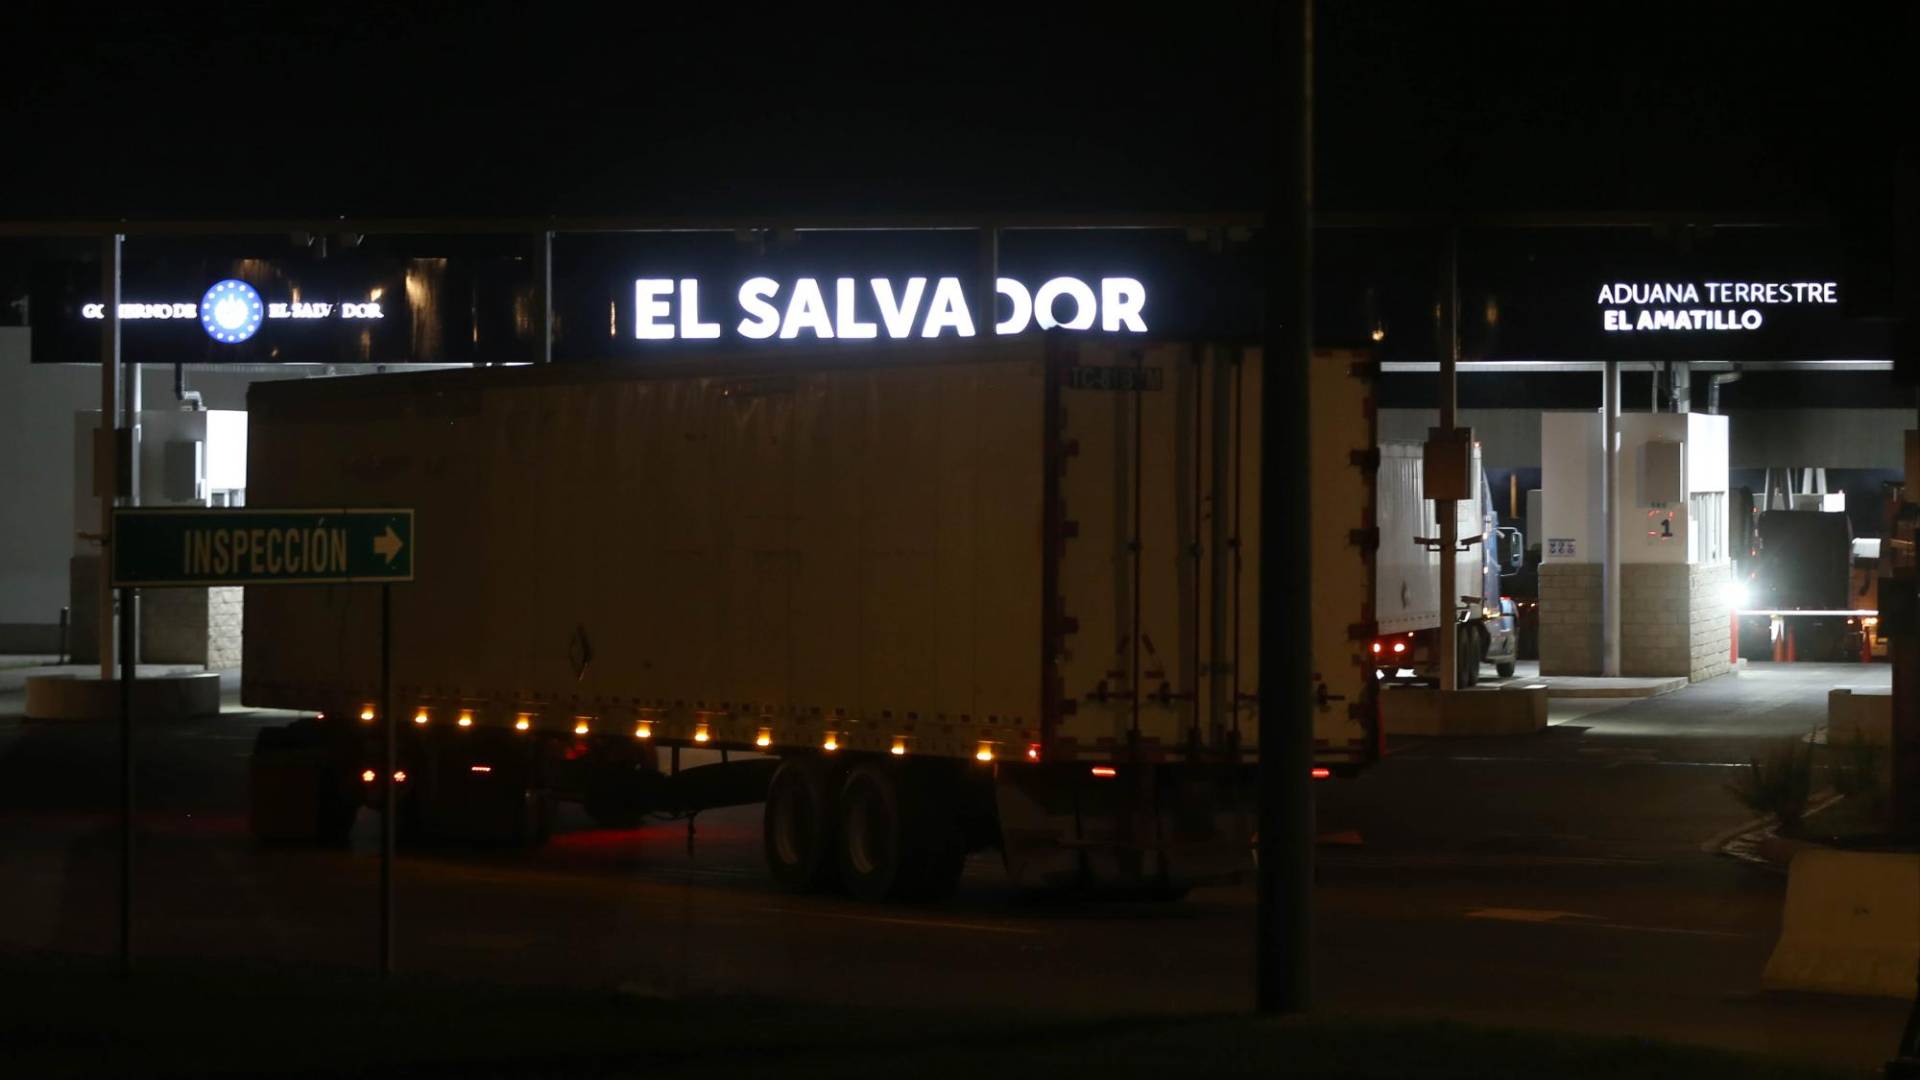 $!La voluntad política y el conocimiento de las personas que pusieron en los cargos permitieron a El Salvador renovar su sistema de aduanas terrestres